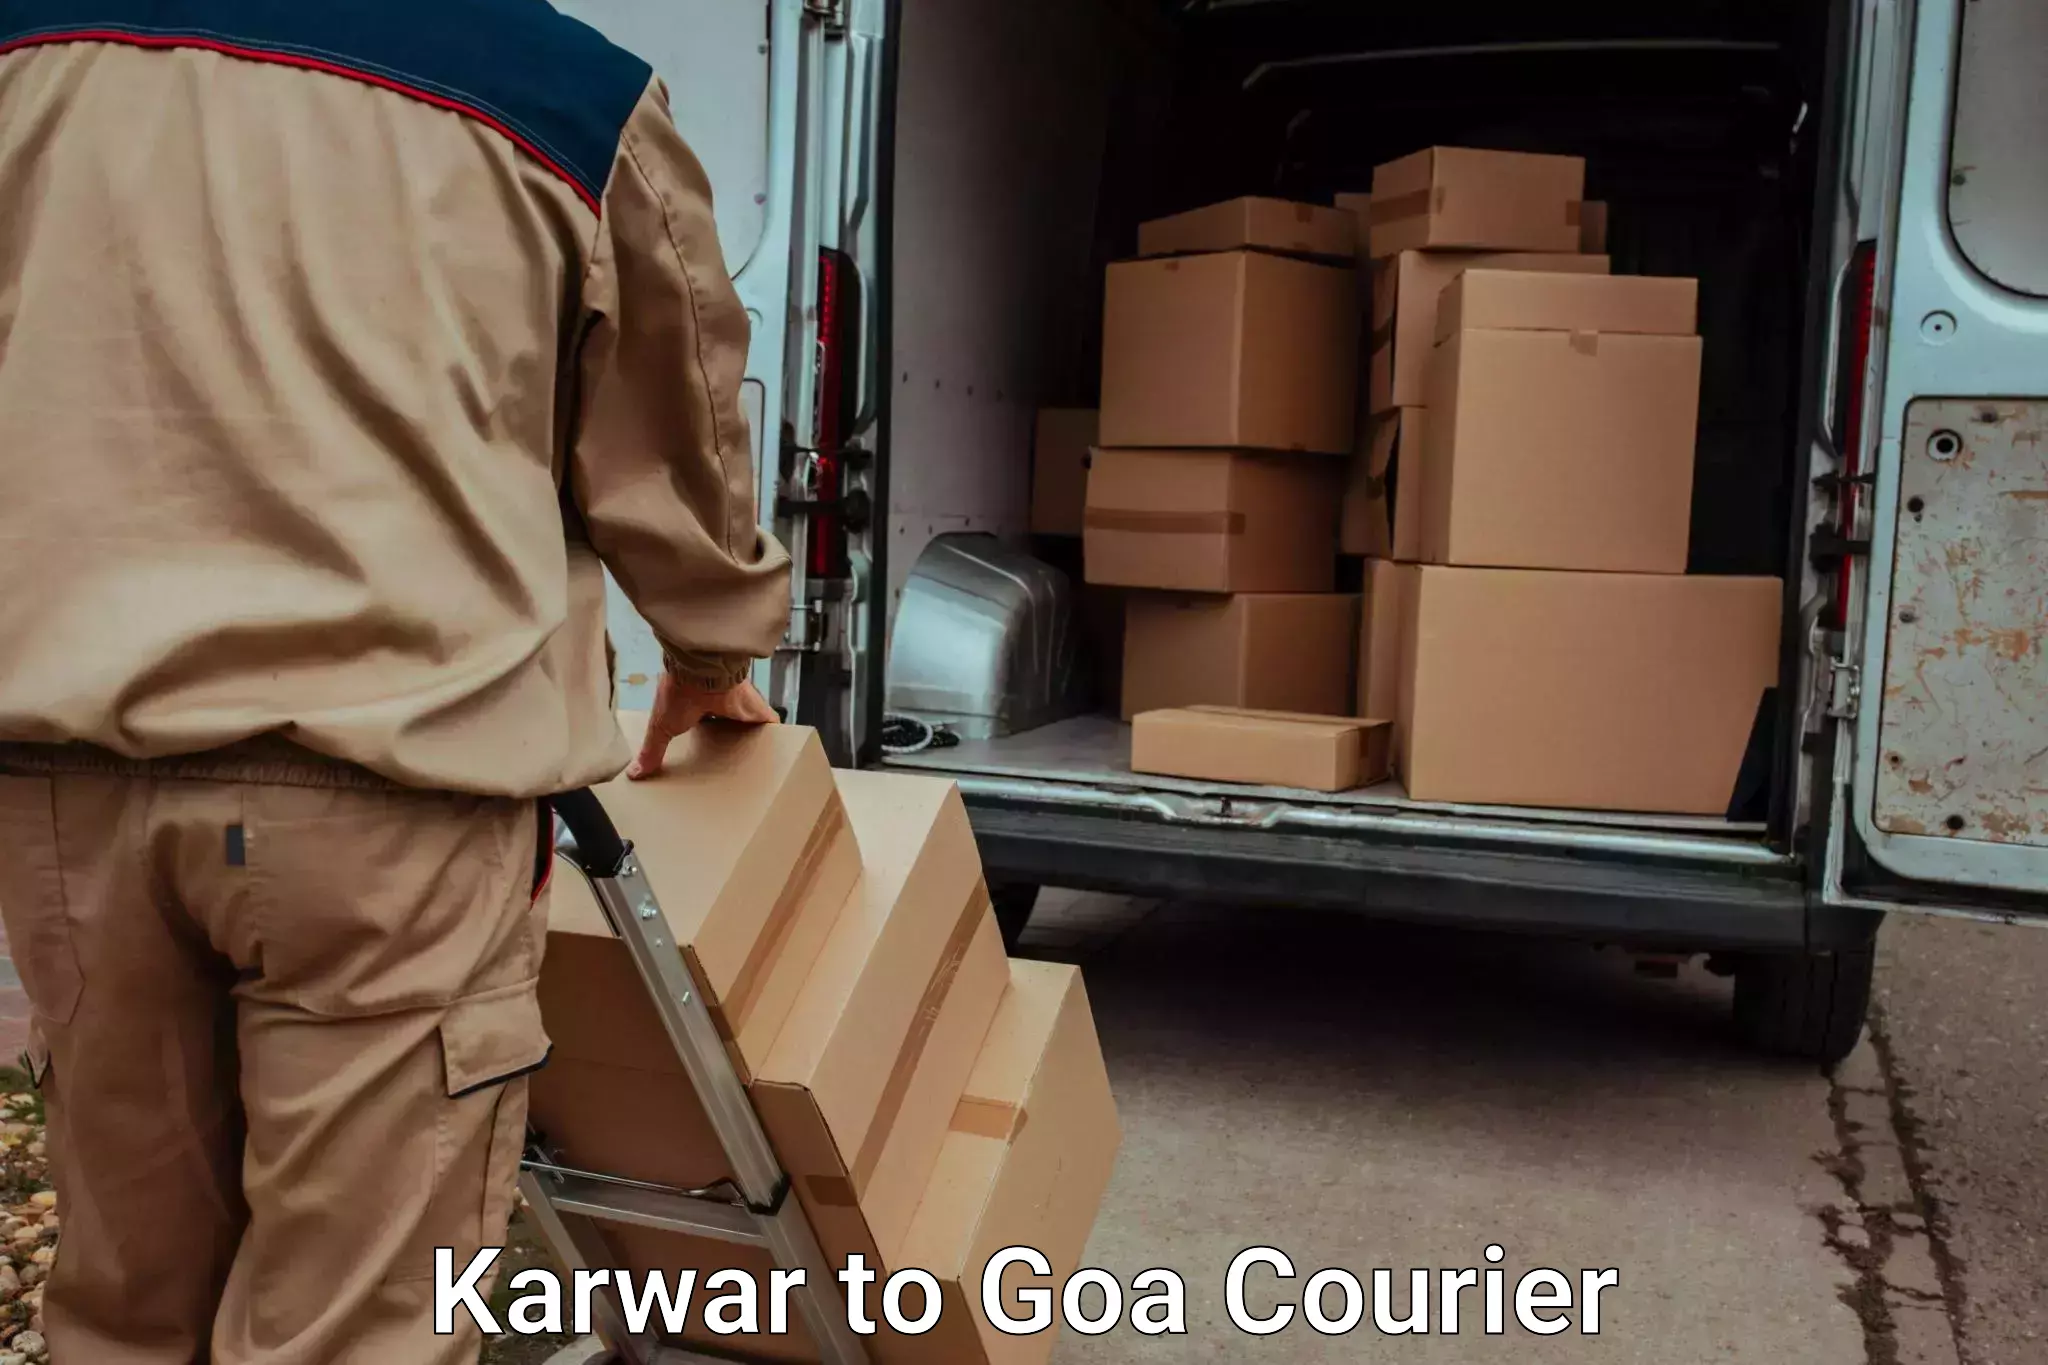 Automated luggage transport Karwar to Panjim